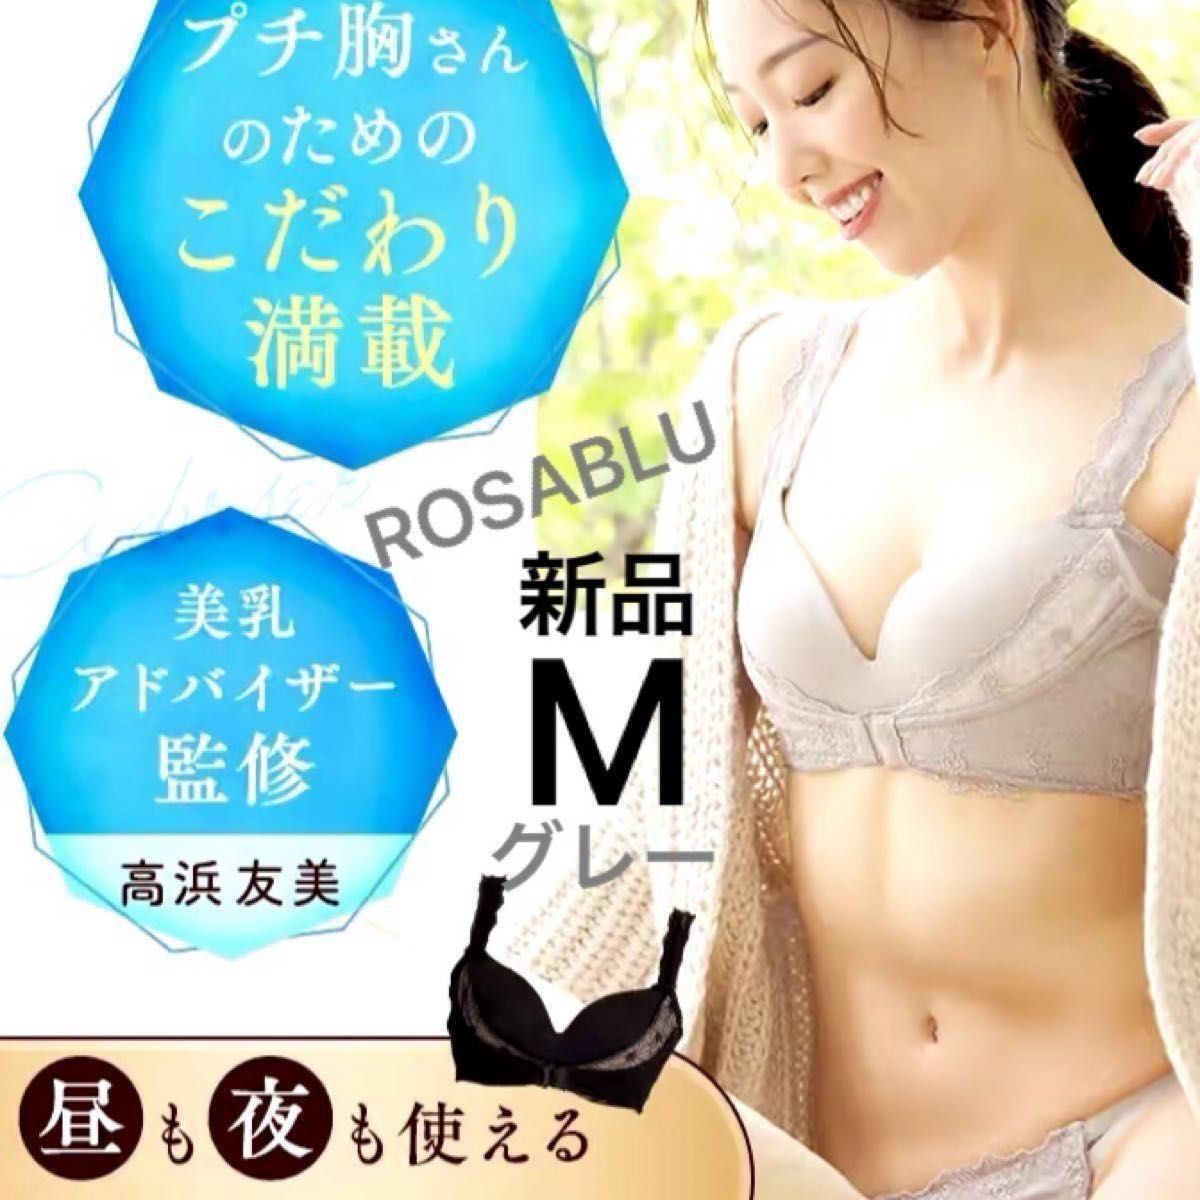 【新品】ロザブルー ROSABLU ノンワイヤー育乳ブラ ナイトブラ グレー　Mサイズ